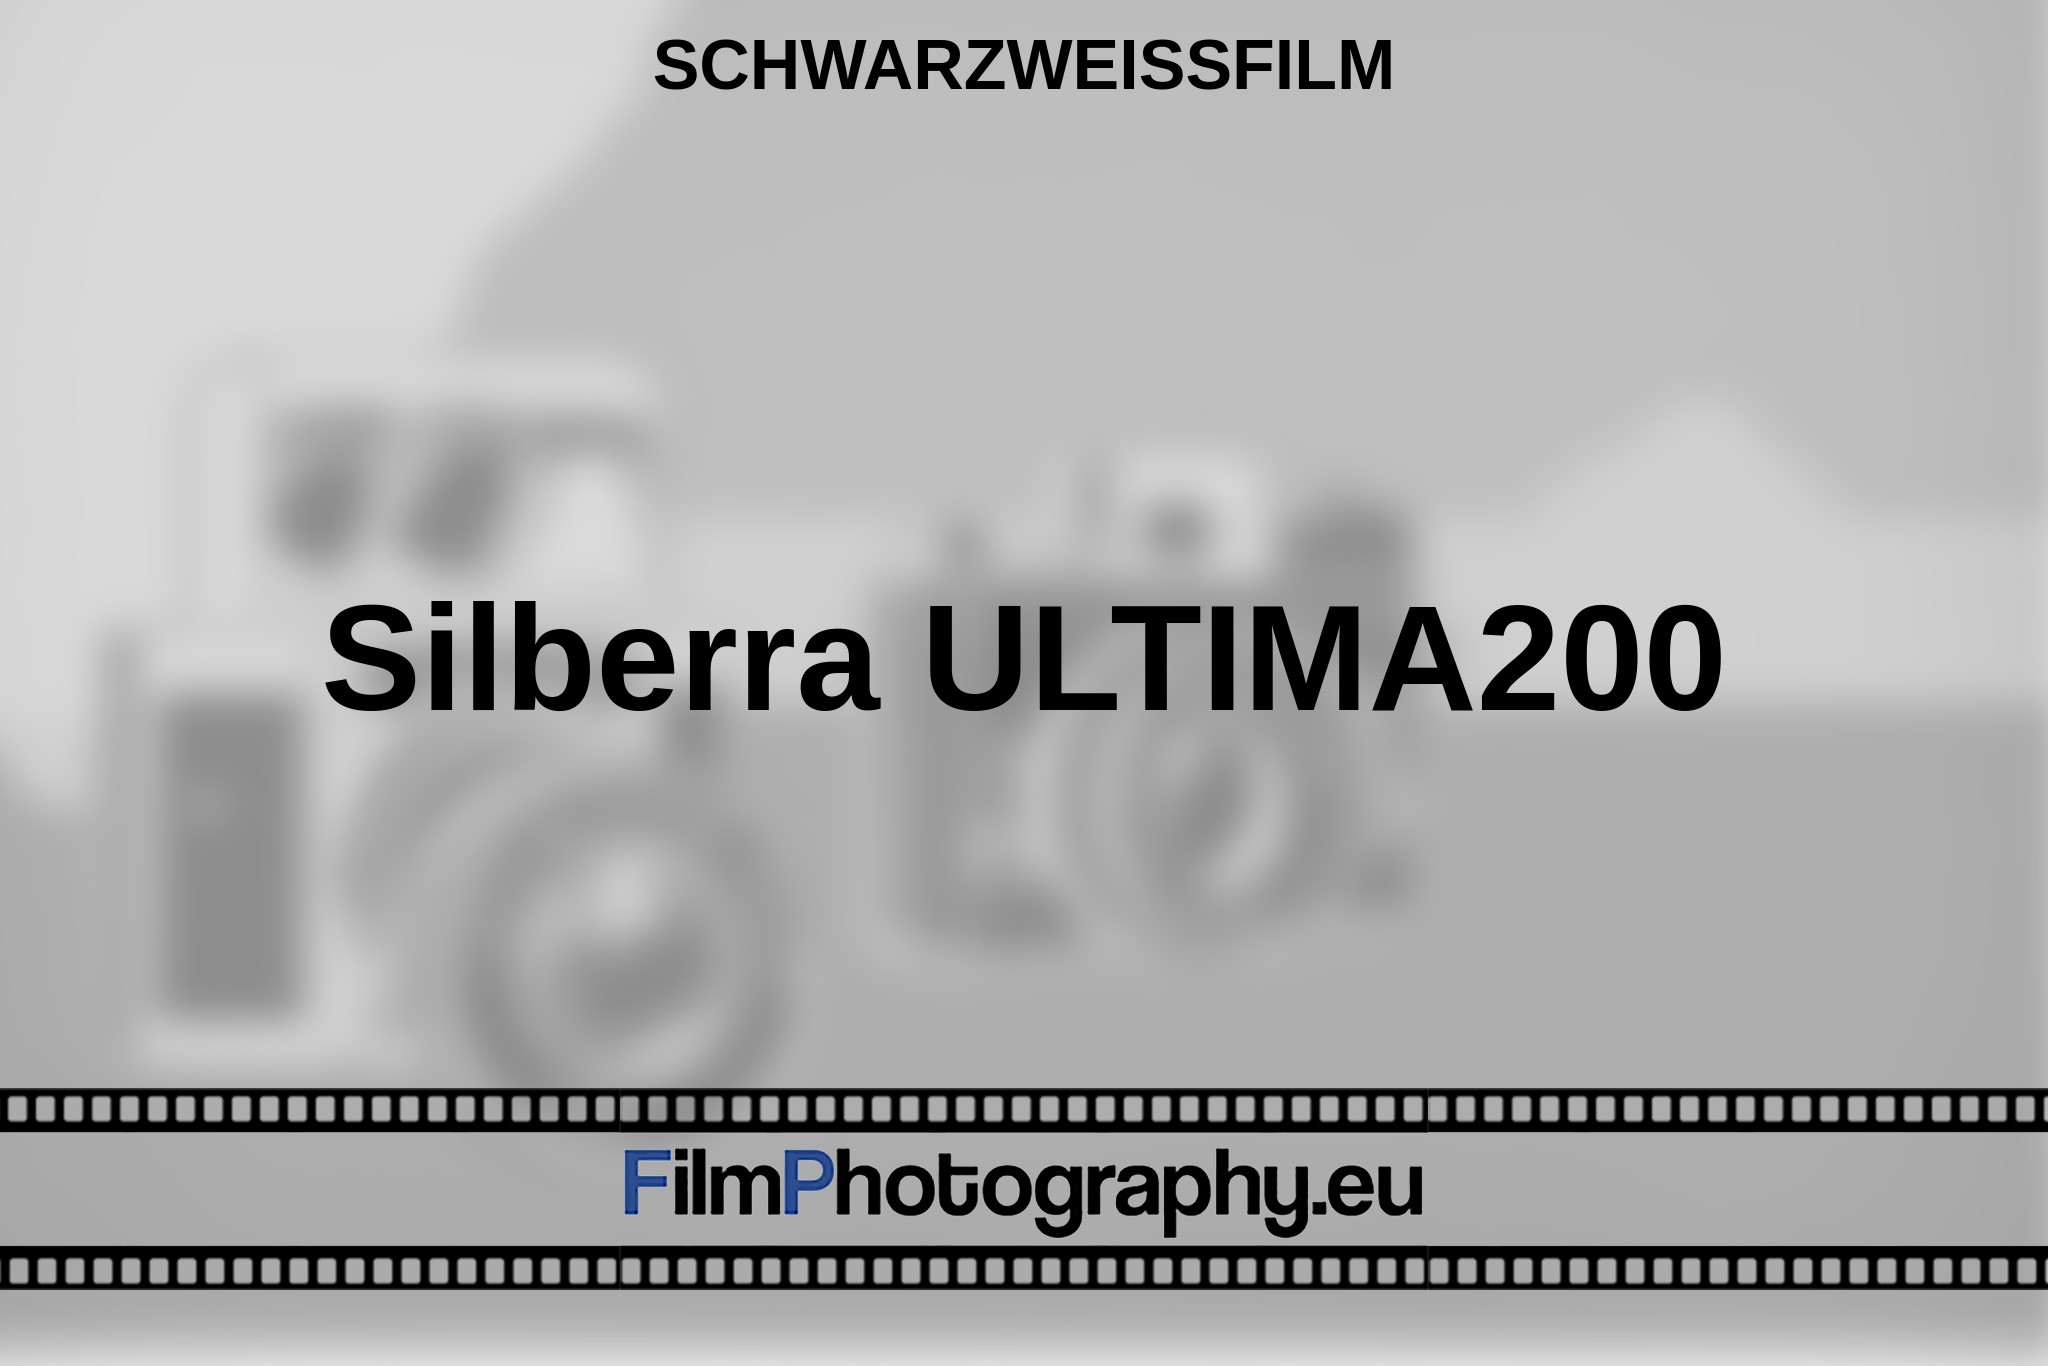 silberra-ultima200-schwarzweißfilm-bnv.jpg